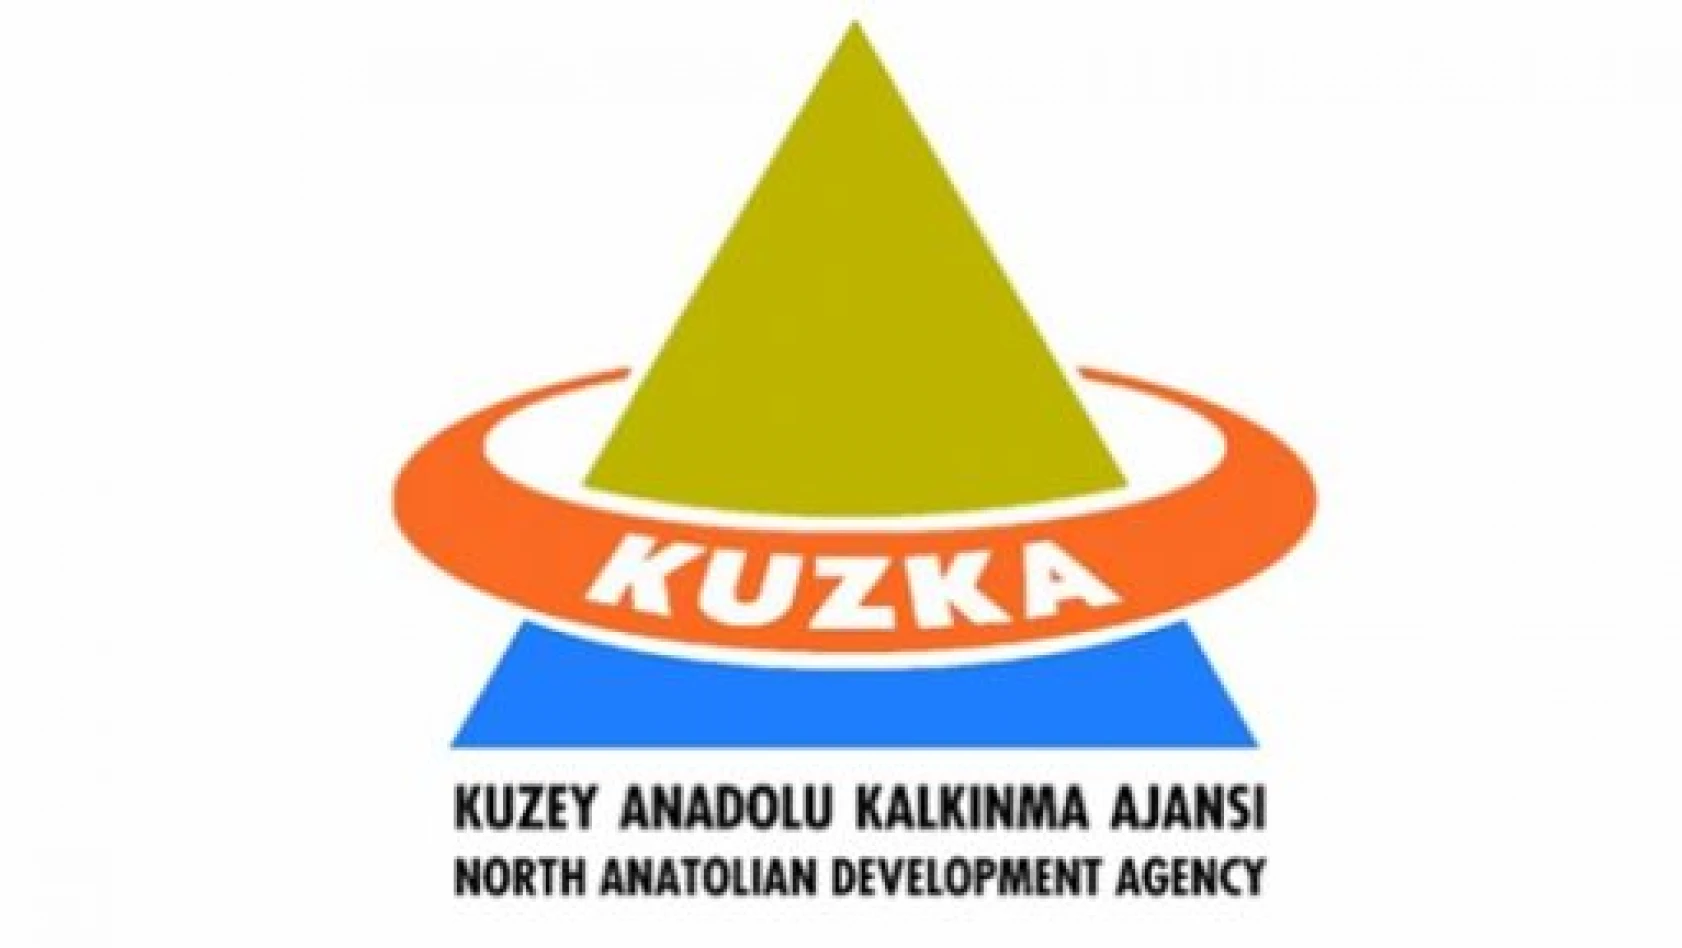 Kuzka, 2013 Yılı Proje Teklif Çağrısına Çıktı 